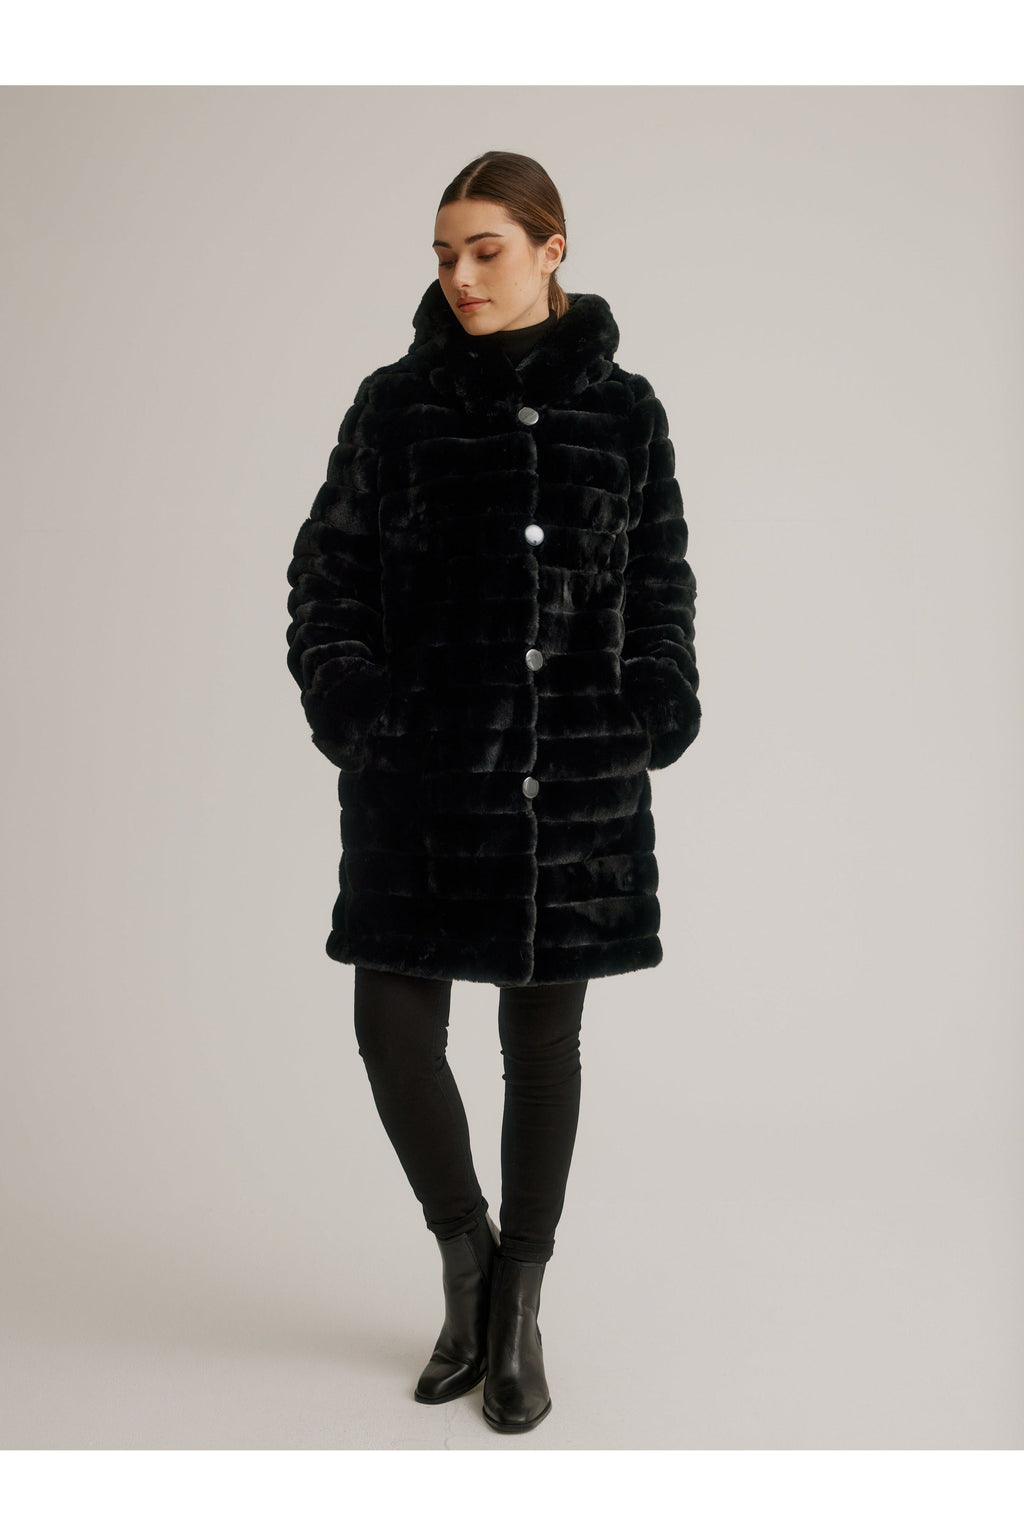 Nikki Jones Reversible Faux Fur Coat - Style K4129RK-164 – Close To You ...